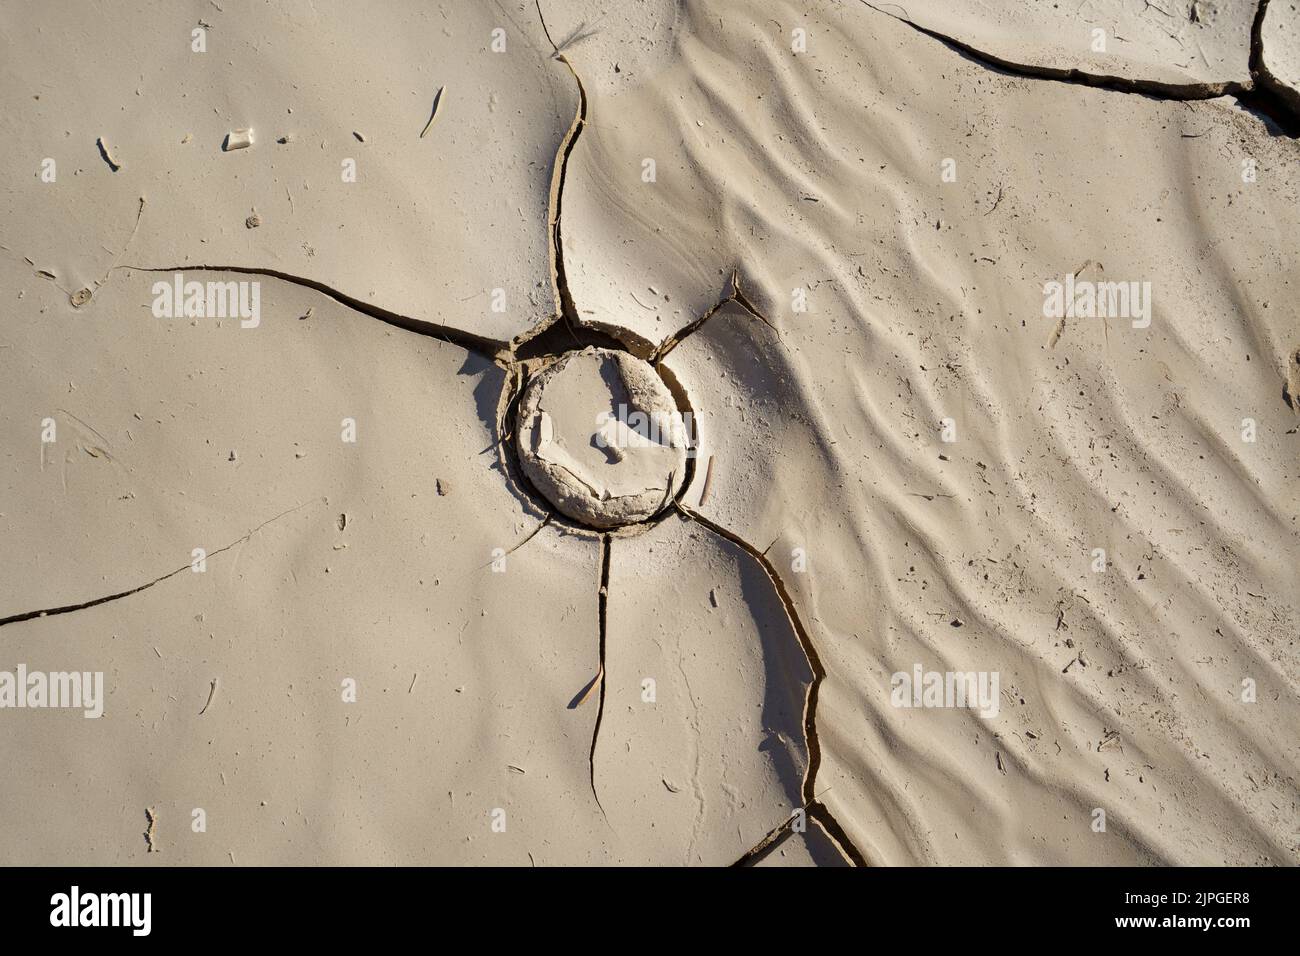 Abstrakter Kreisriss im Schlamm eines trockenen Flussbettes. Swakop River, Namibia, Afrika Stockfoto